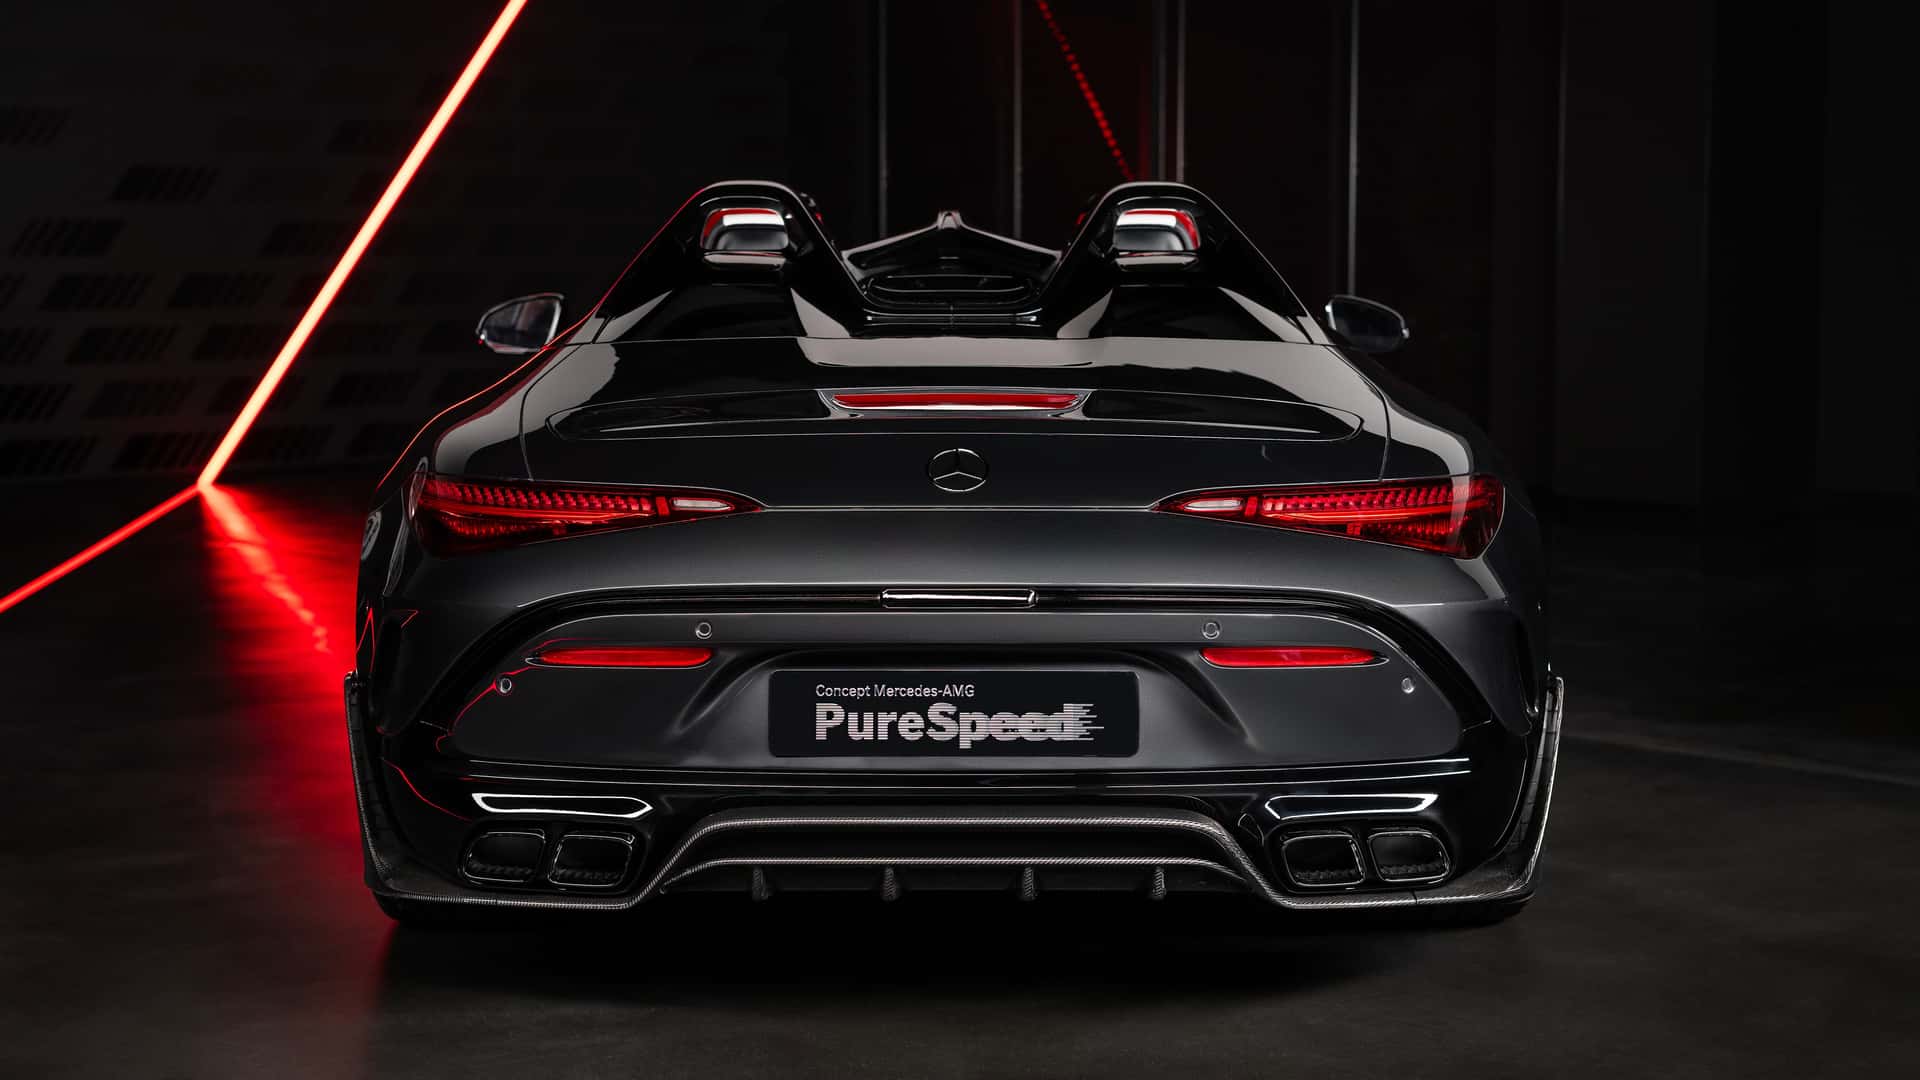 Ra mắt Mercedes-AMG Mythos PureSpeed - Siêu xe dùng công nghệ F1, khách phải được Mercedes-Benz duyệt mới được mua- Ảnh 7.